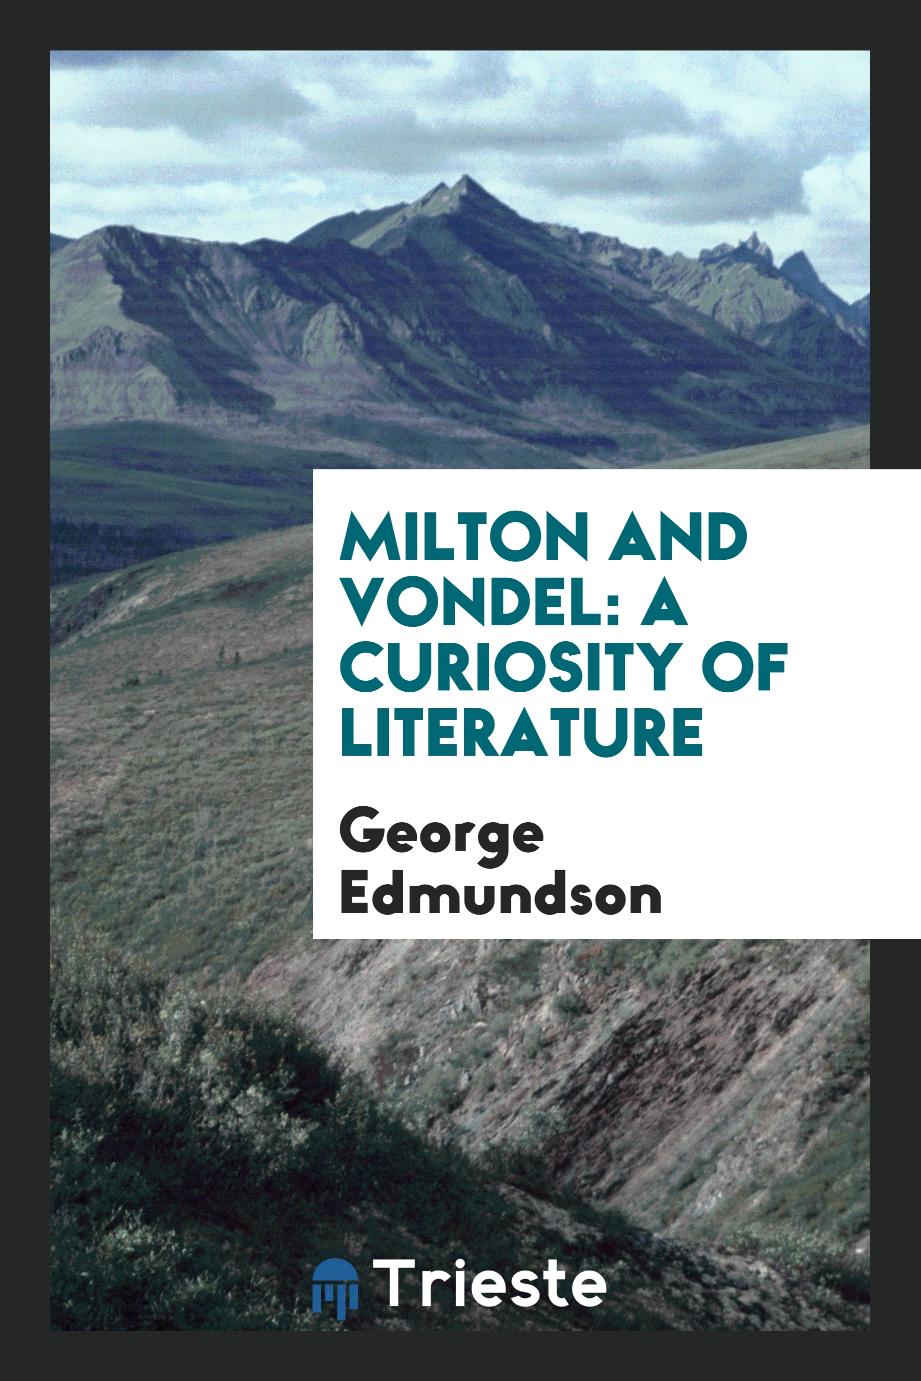 Milton and Vondel: a curiosity of literature